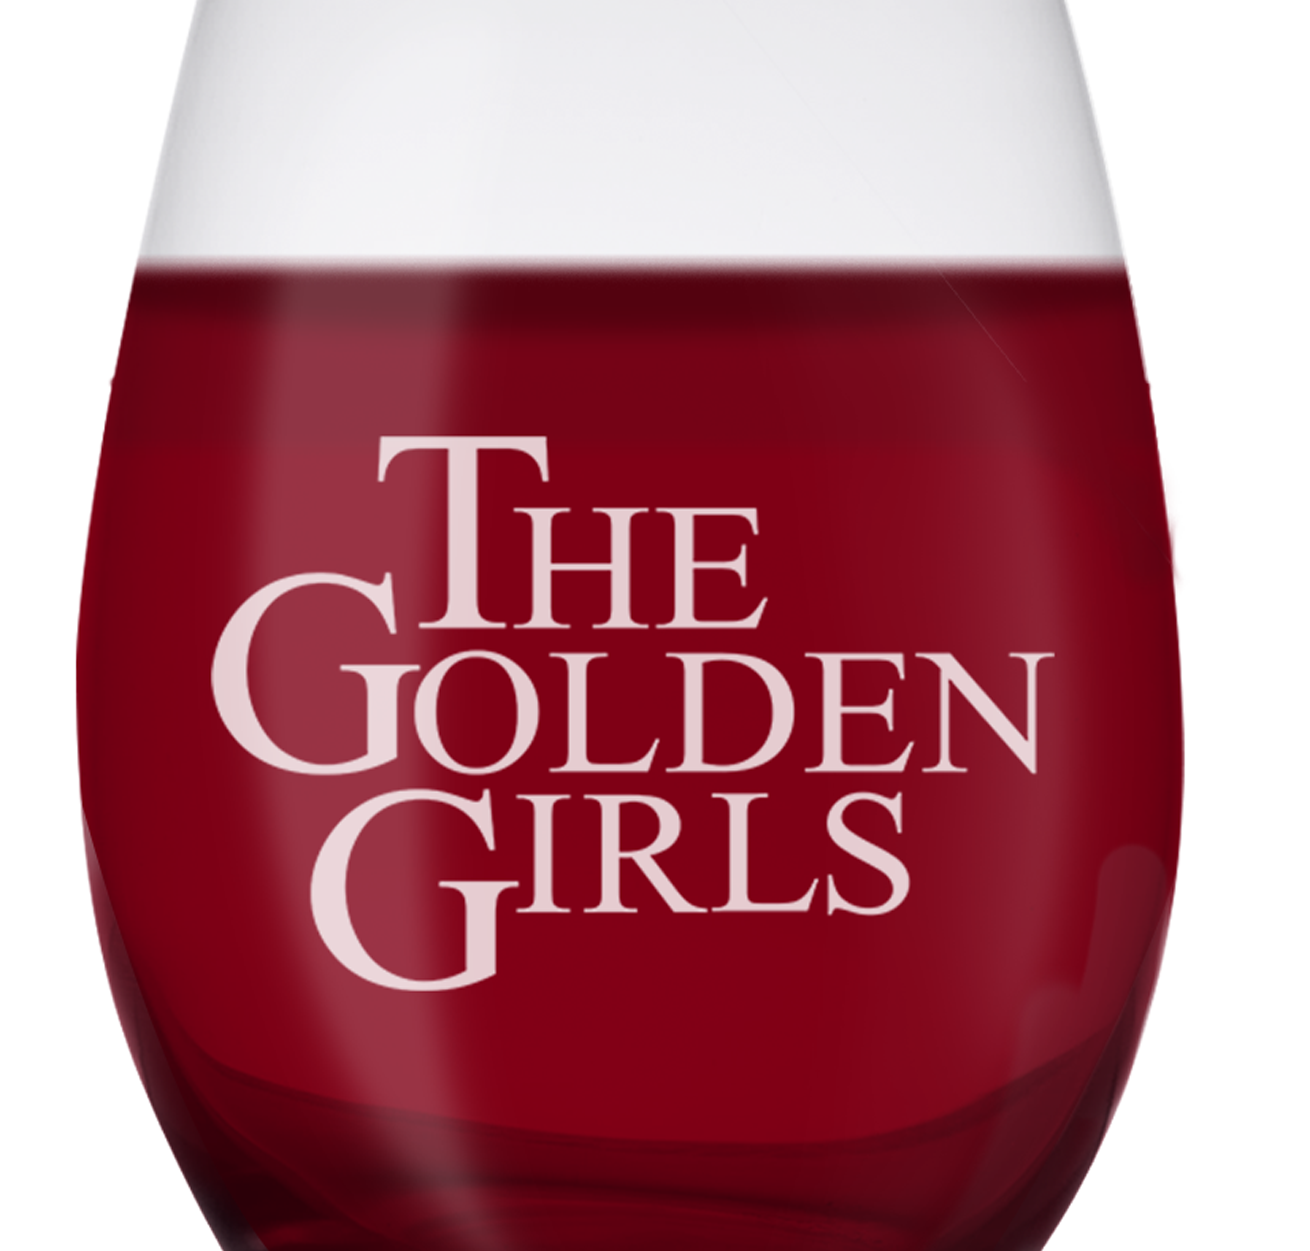 Buy The Golden Girls Wine Glasses on